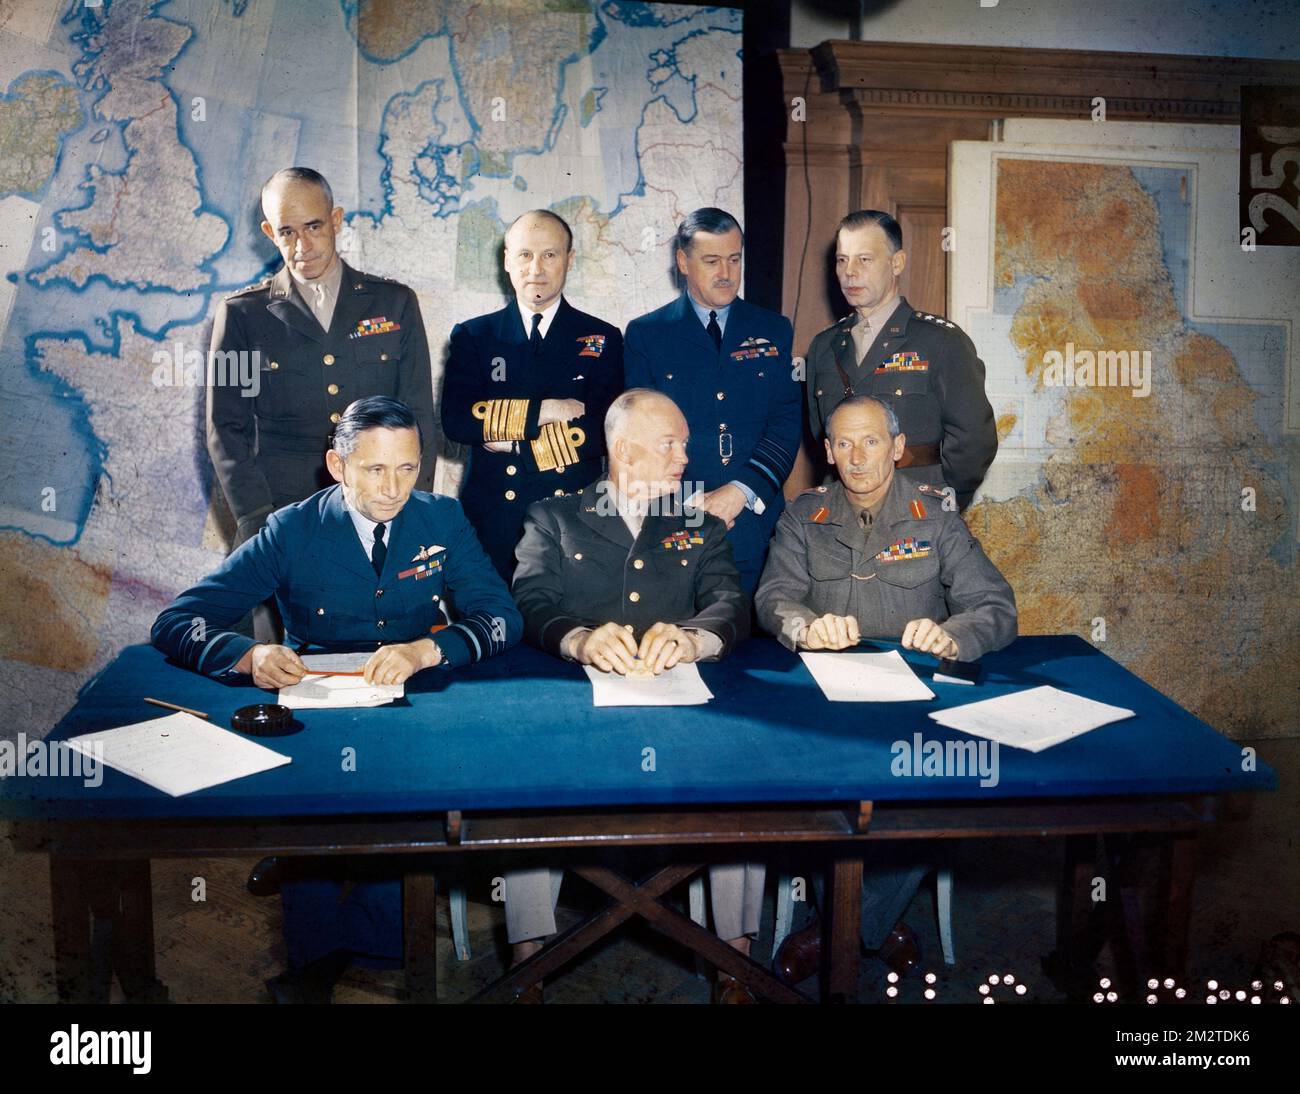 LONDRA, INGHILTERRA, Regno Unito - 01 febbraio 1944 - il generale dell'esercito statunitense Dwight D. Eisenhower viene mostrato con il suo staff. Da sinistra a destra, seduto: RAF Air Chief Marshall Foto Stock